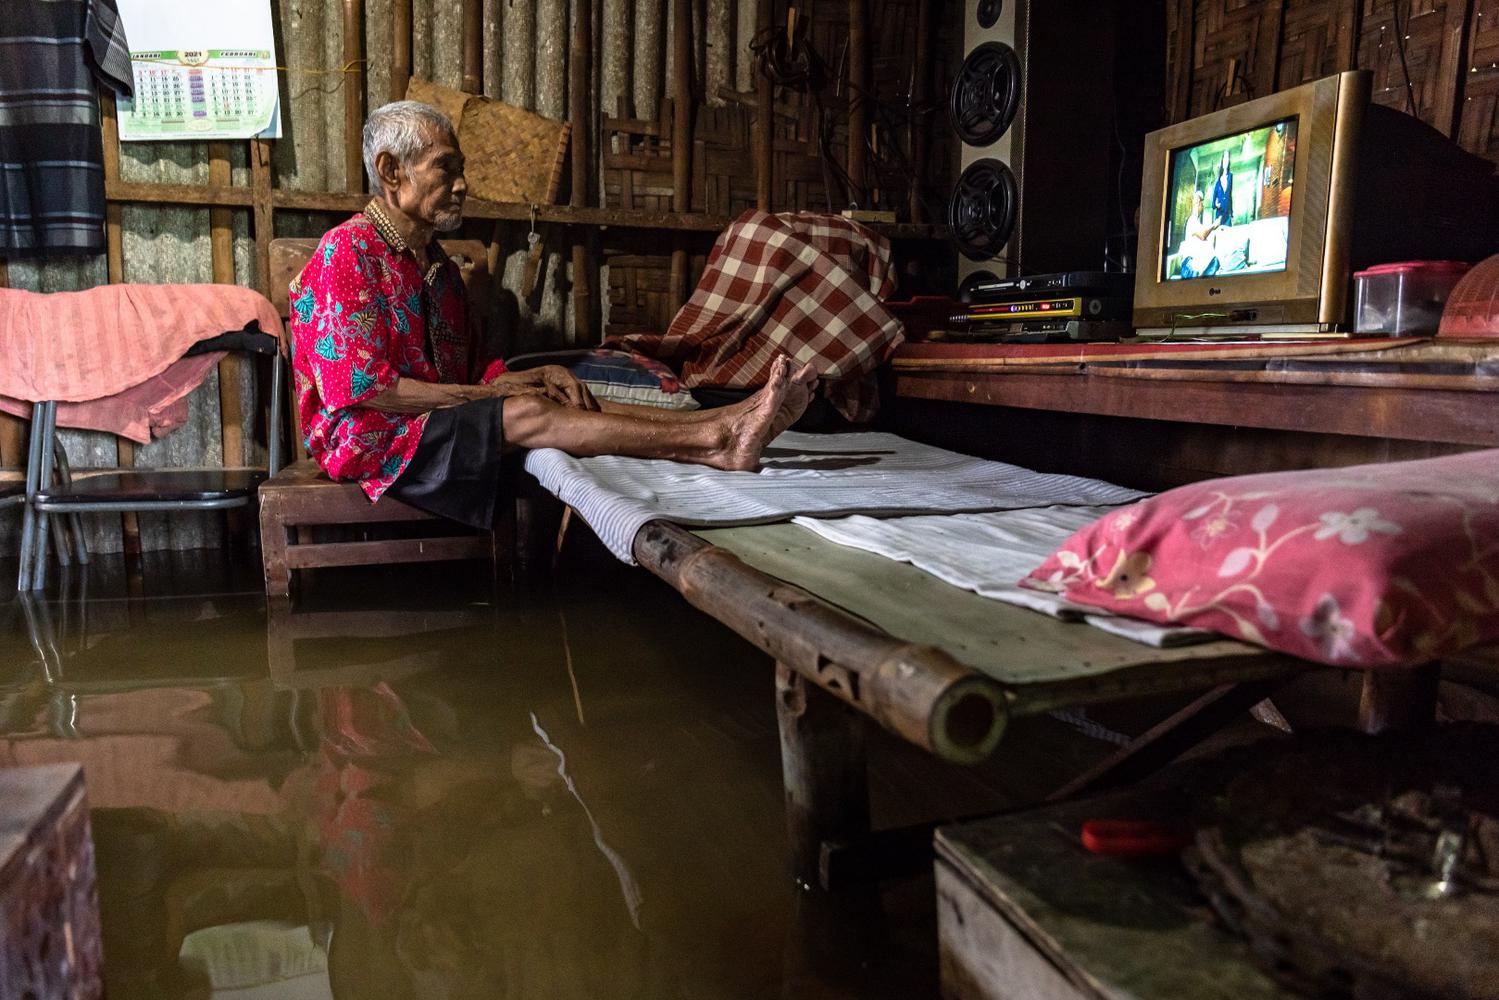 Warga menyaksikan tayangan televisi di dalam rumahnya yang terendam banjir di Desa Sayung, Kecamatan Sayung, Kabupaten Demak, Jawa Tengah, Minggu (7/2/2021). Berdasarkan data dari Kantor Balai Desa Sayung, sebanyak 3.161 keluarga dengan total 10.297 jiwa yang tersebar di delapan dukuh di desa tersebut terendam banjir dengan variasi ketinggian sekitar 40-120 cm disebabkan oleh curah hujan tinggi serta meluapnya Sungai Dombo Sayung.